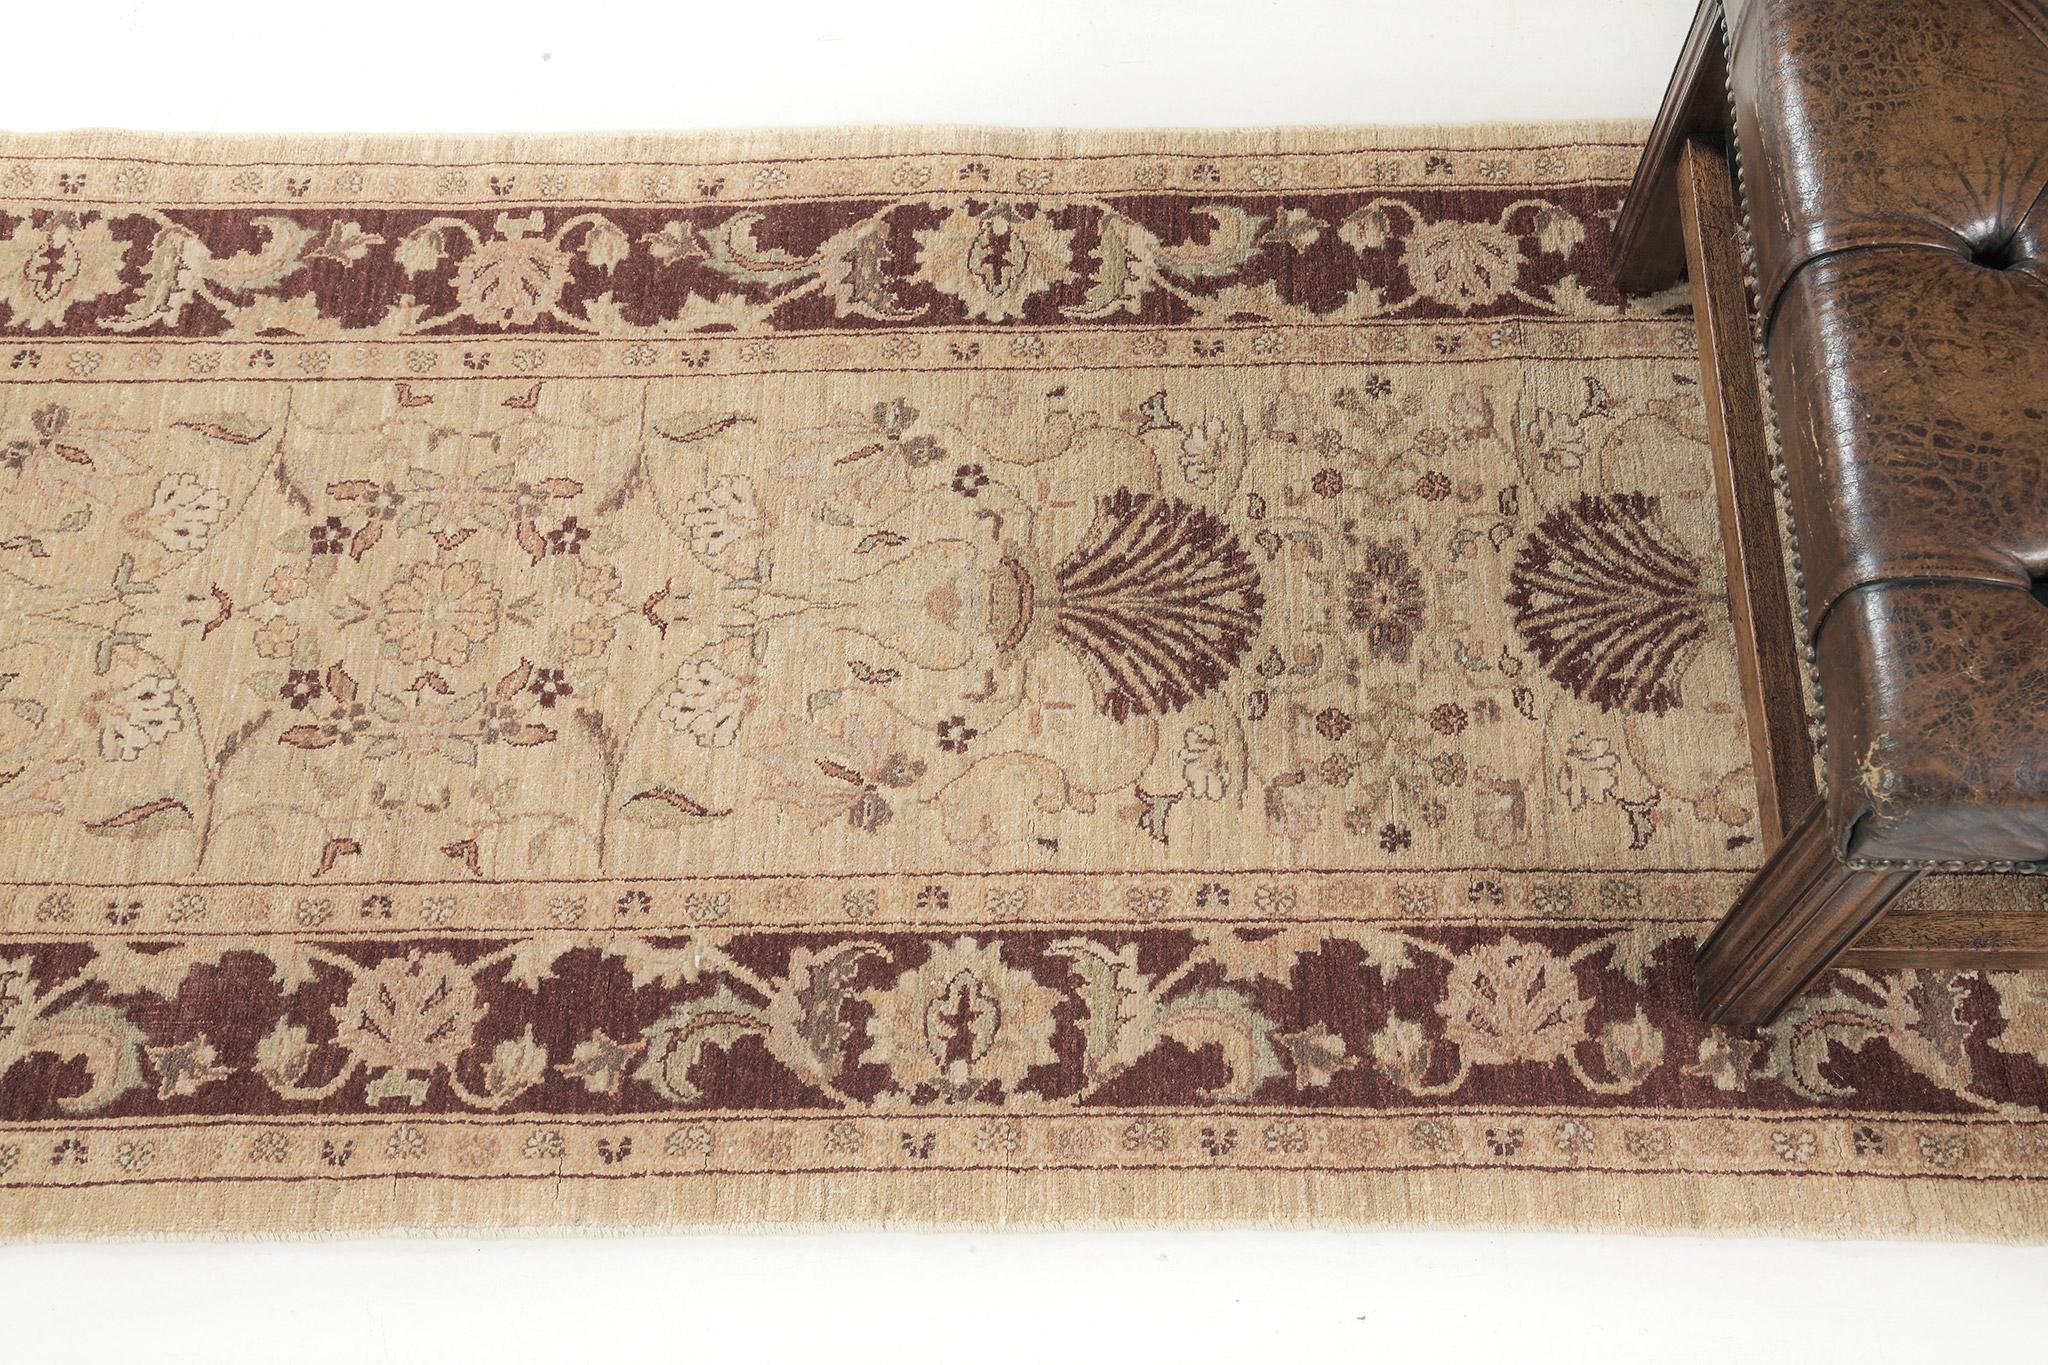 Ce chemin de table de Tabriz est immensément incorporé avec plein de beaux motifs de feuillage dans une doublure naturelle. Les bordures brun-terre et les accents bleus doux confèrent au motif un caractère très distinctif. Ces magnifiques ornements